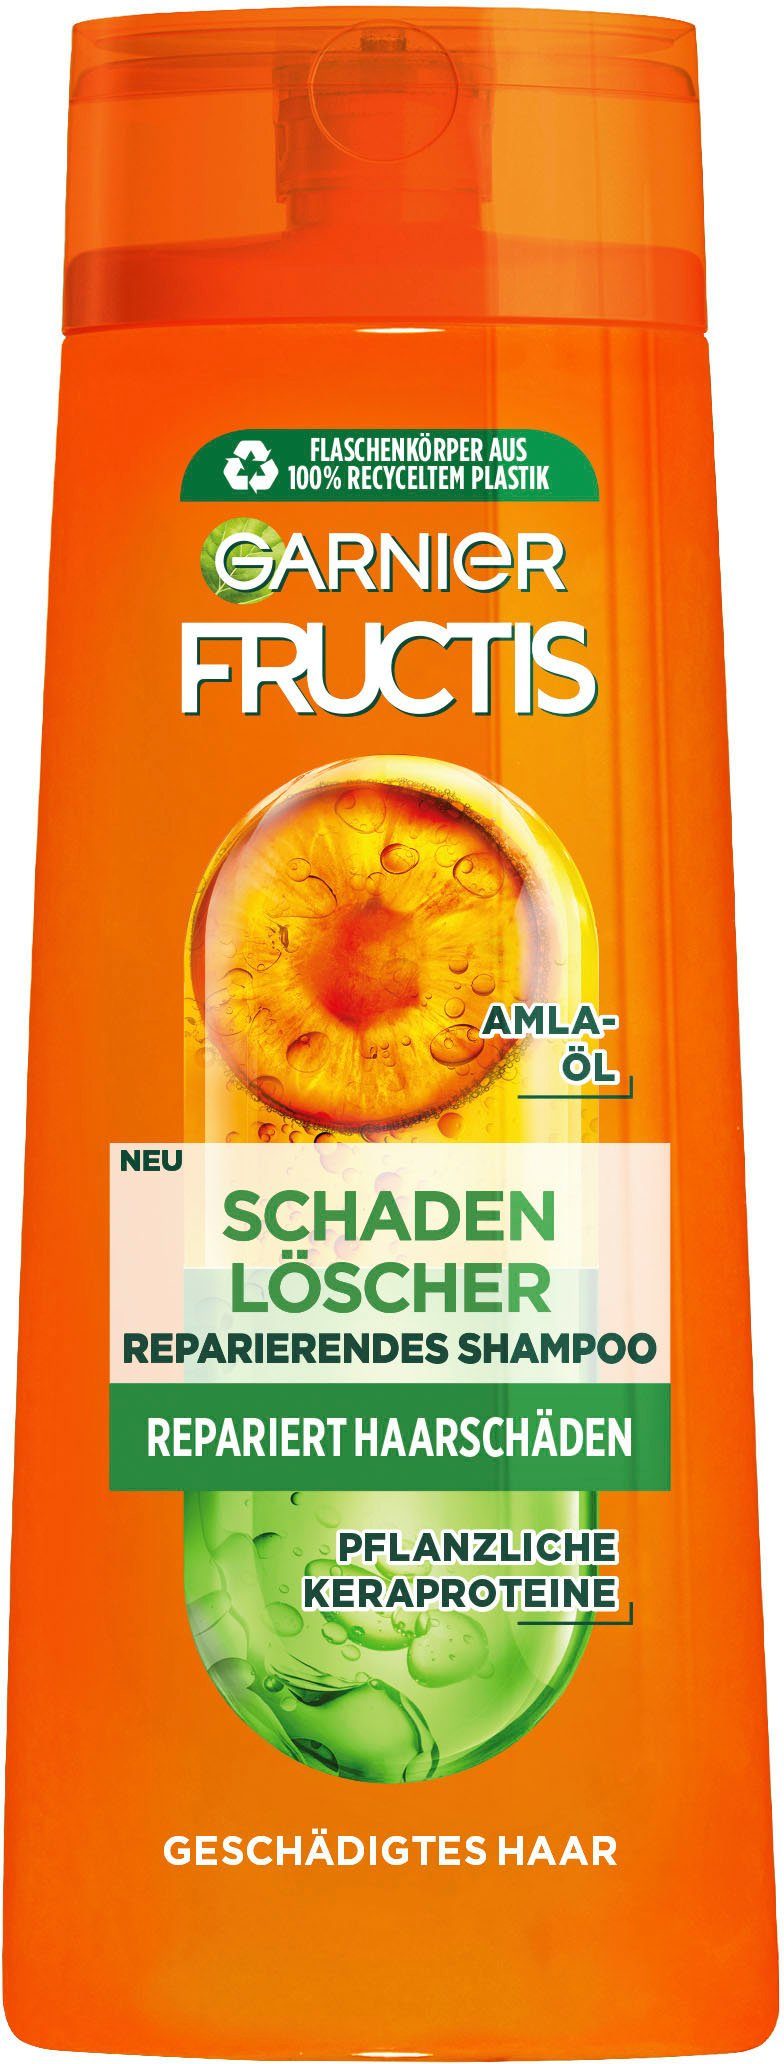 GARNIER Haarshampoo Garnier Fructis Set, Schadenlöscher Shampoo